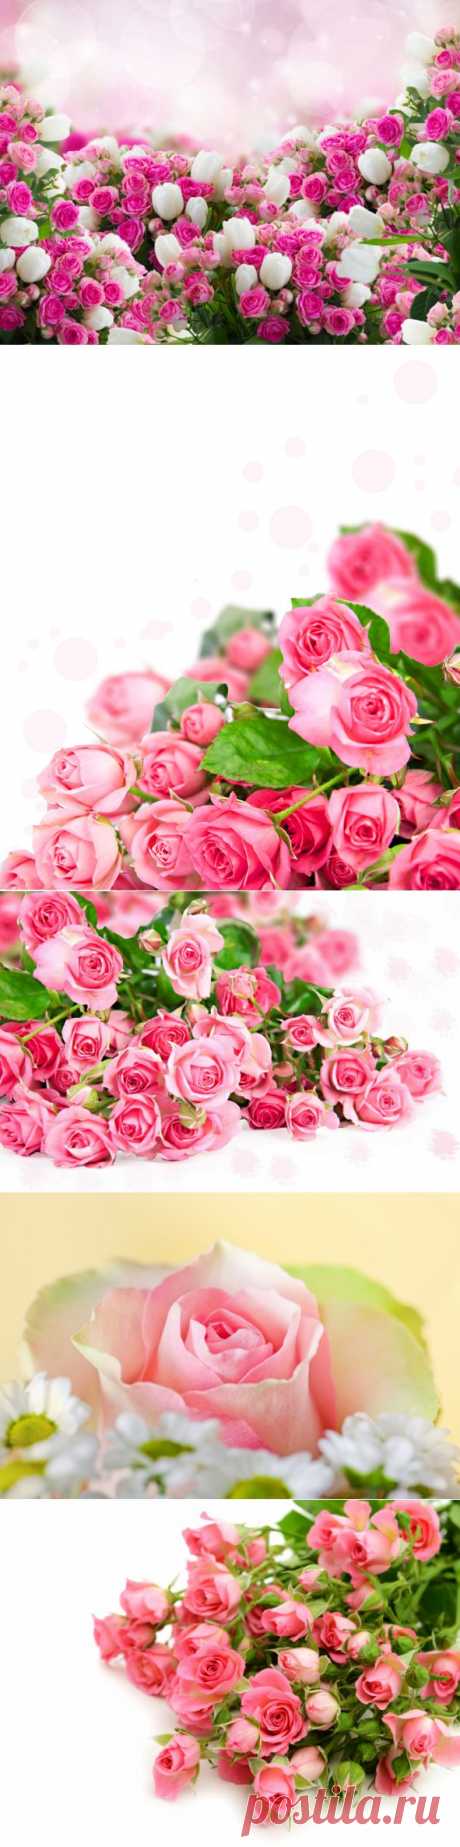 Розовый цвет и розовые розы